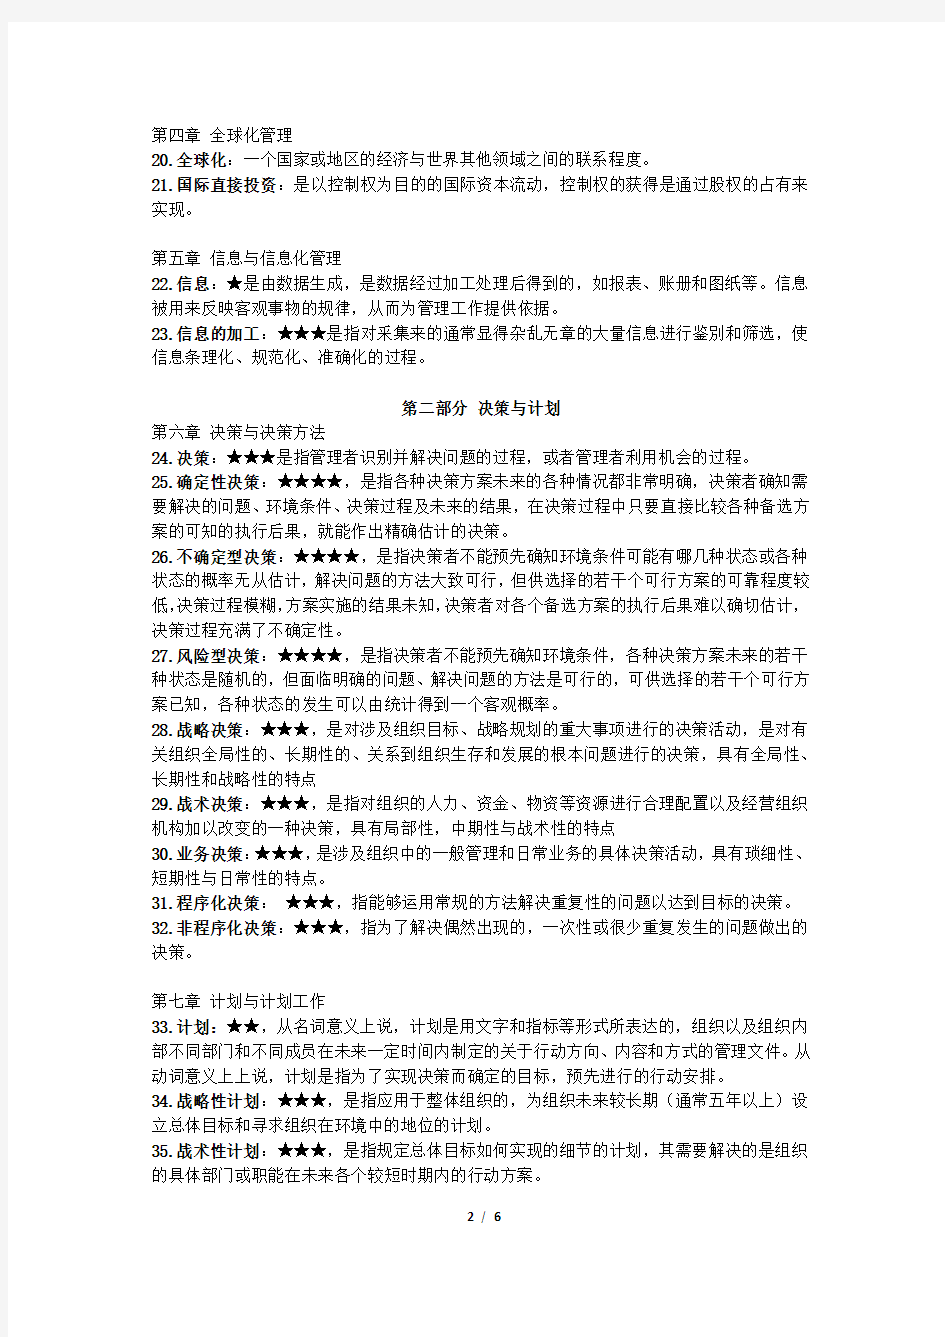 (完整word版)2018广东专插本考试大纲规定的管理学识记的名词或概念